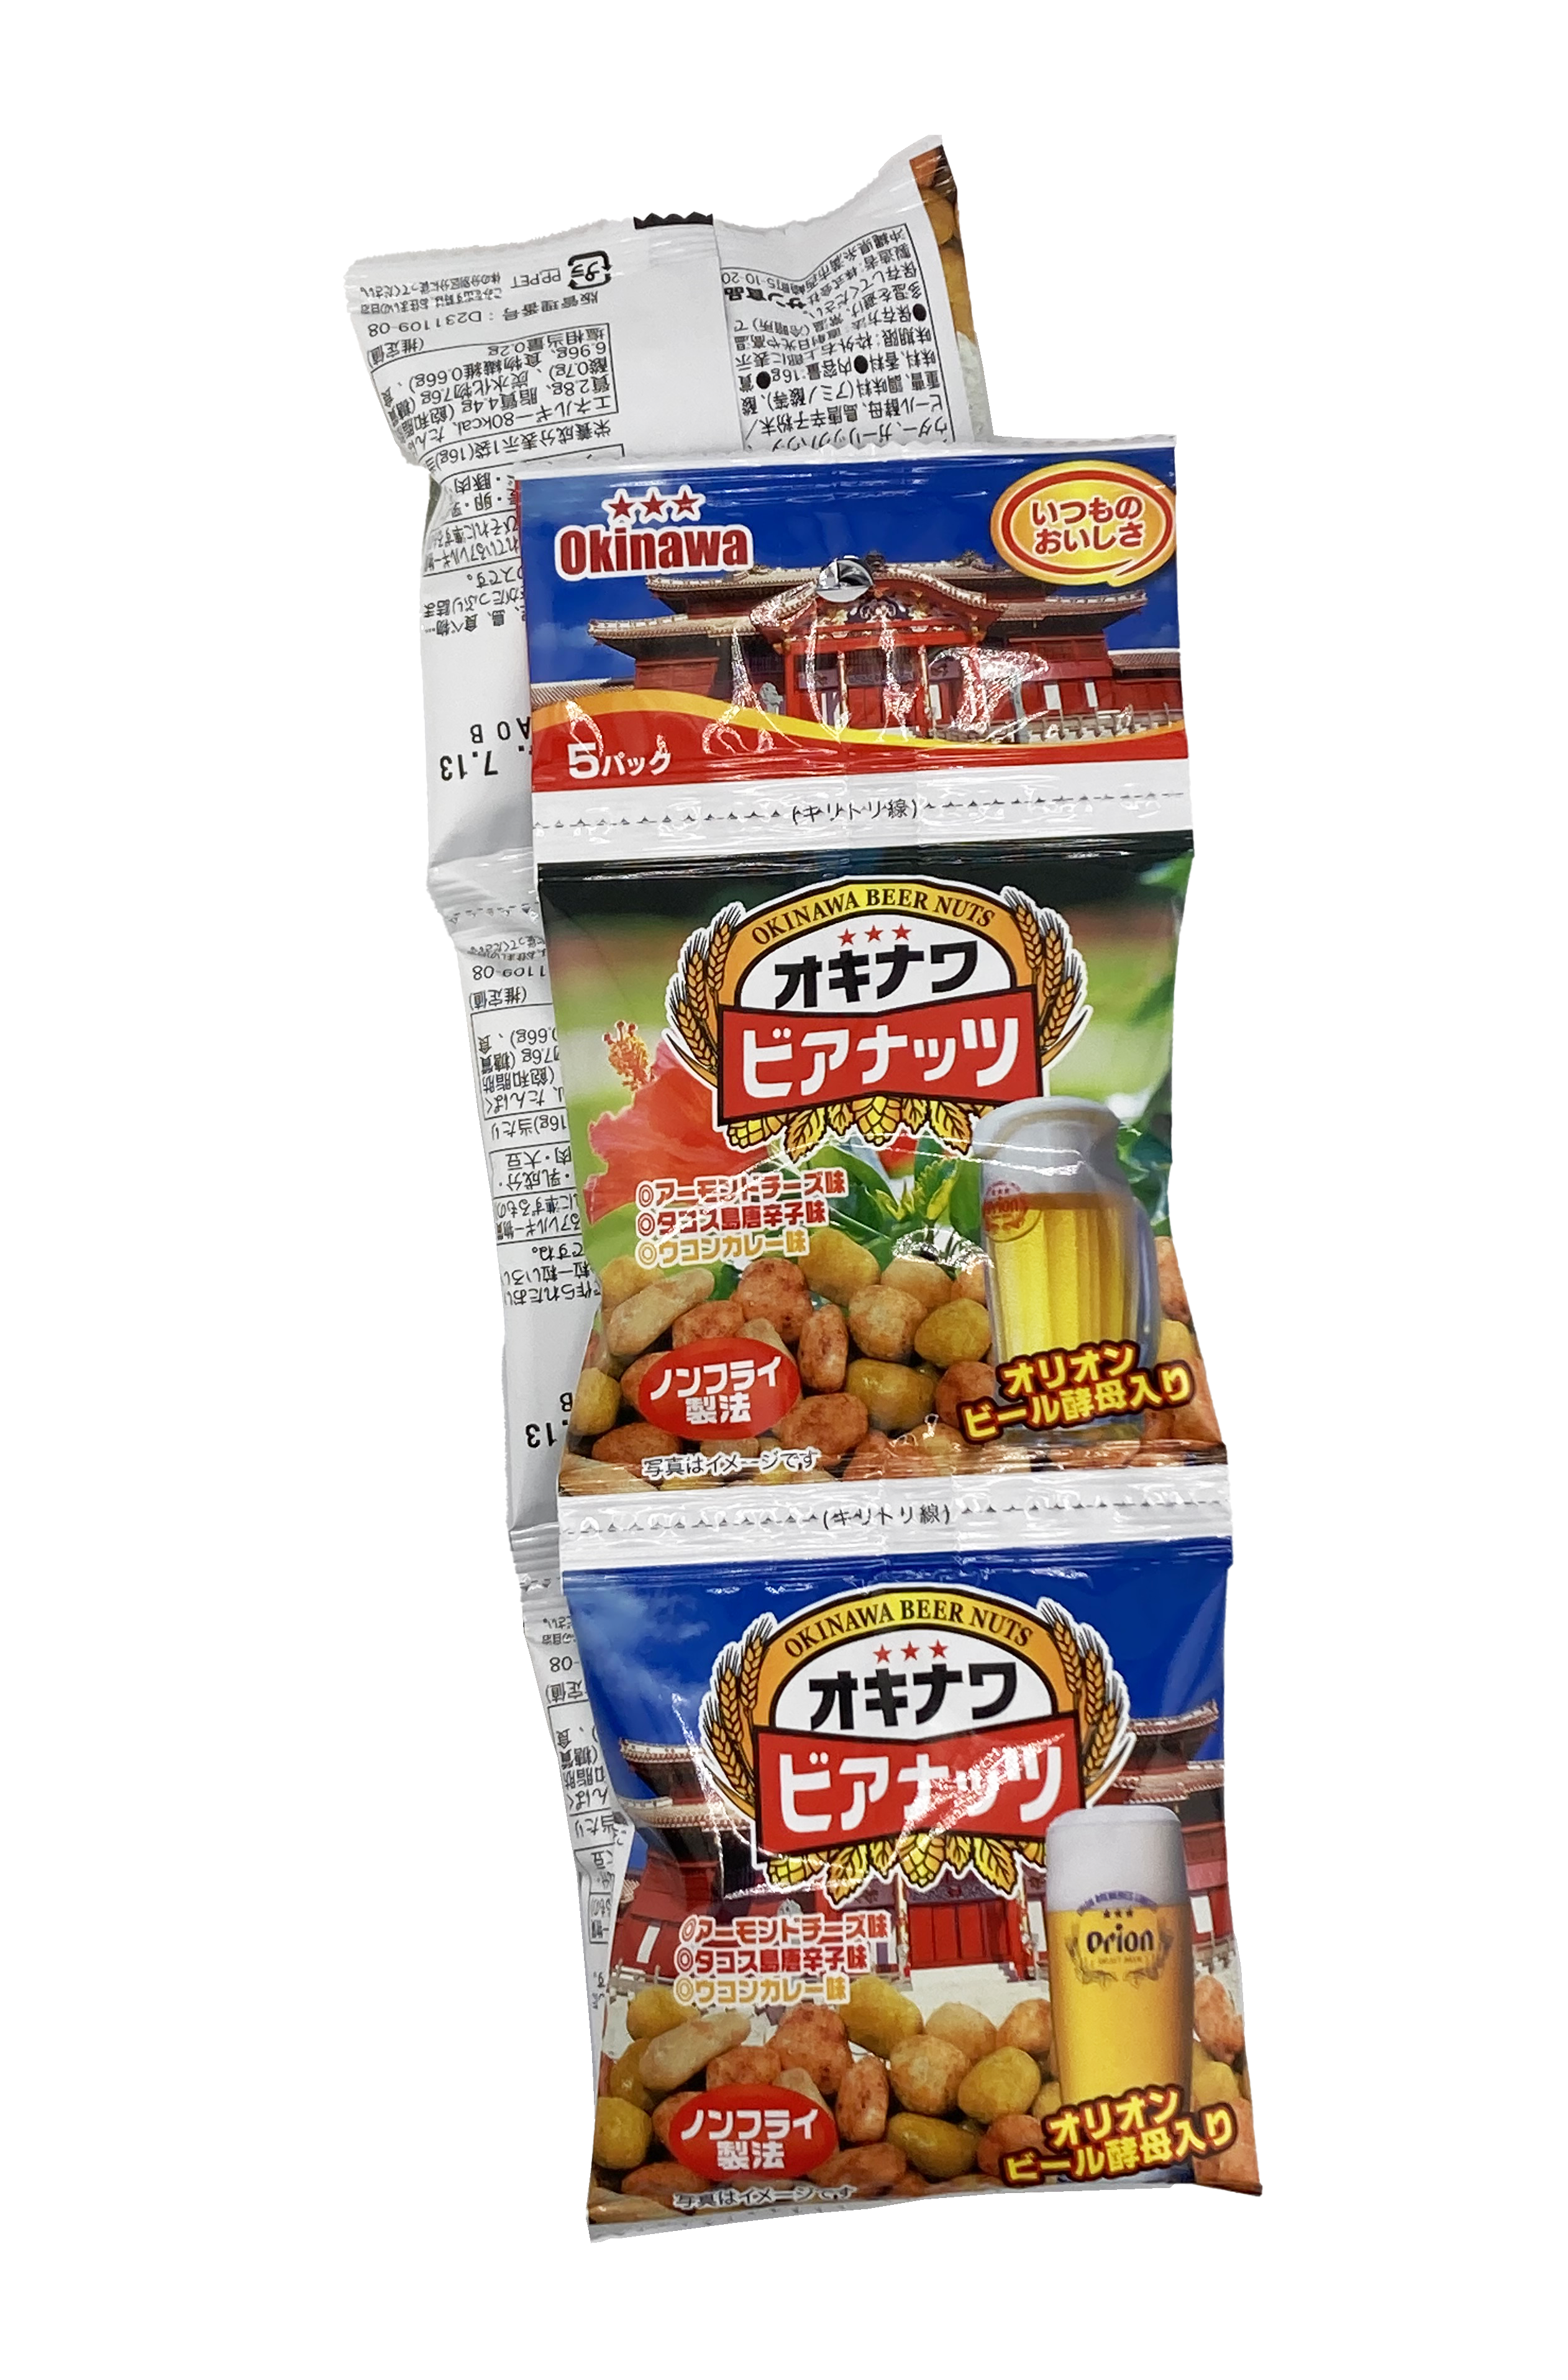 オリオンビアナッツ(16g×5連袋×20袋) おつまみ ビール酵母 お酒 沖縄